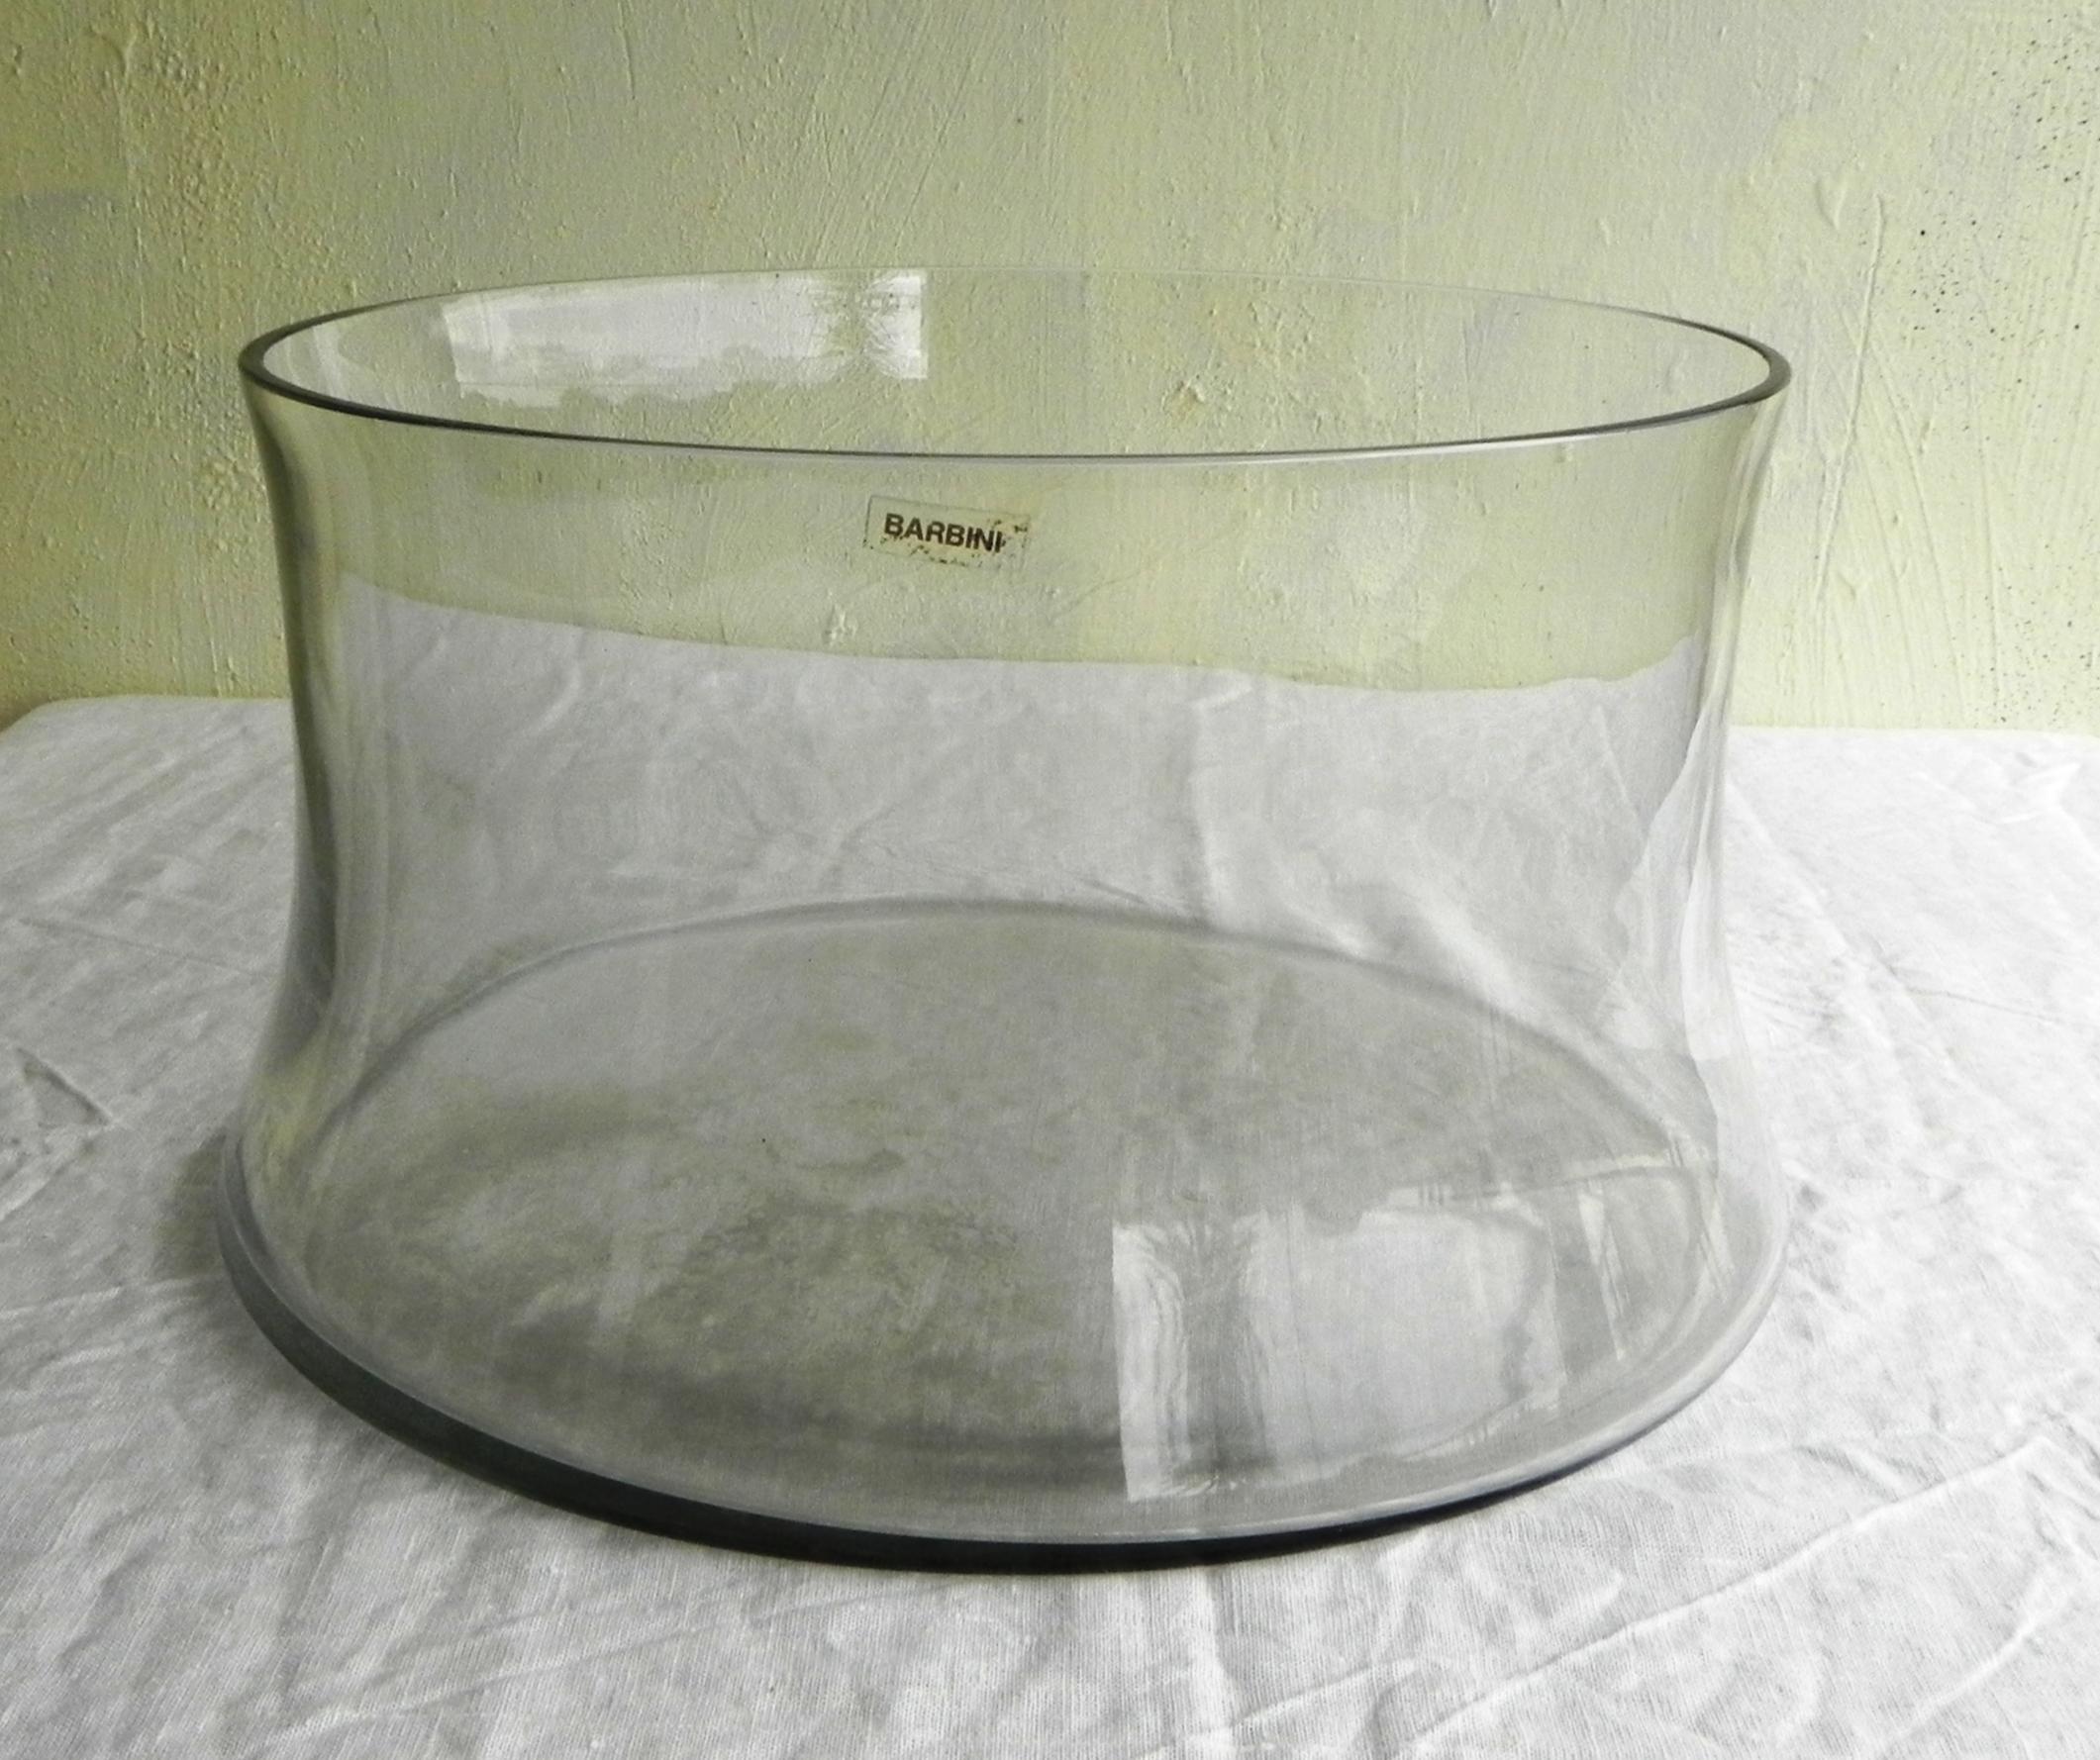 Barbini, coupe de centre de table en verre. 1970. coupe de grand diamètre en verre lourd, façonnée et effilée sur les côtés. manufacture Barbini, Murano. Venise.